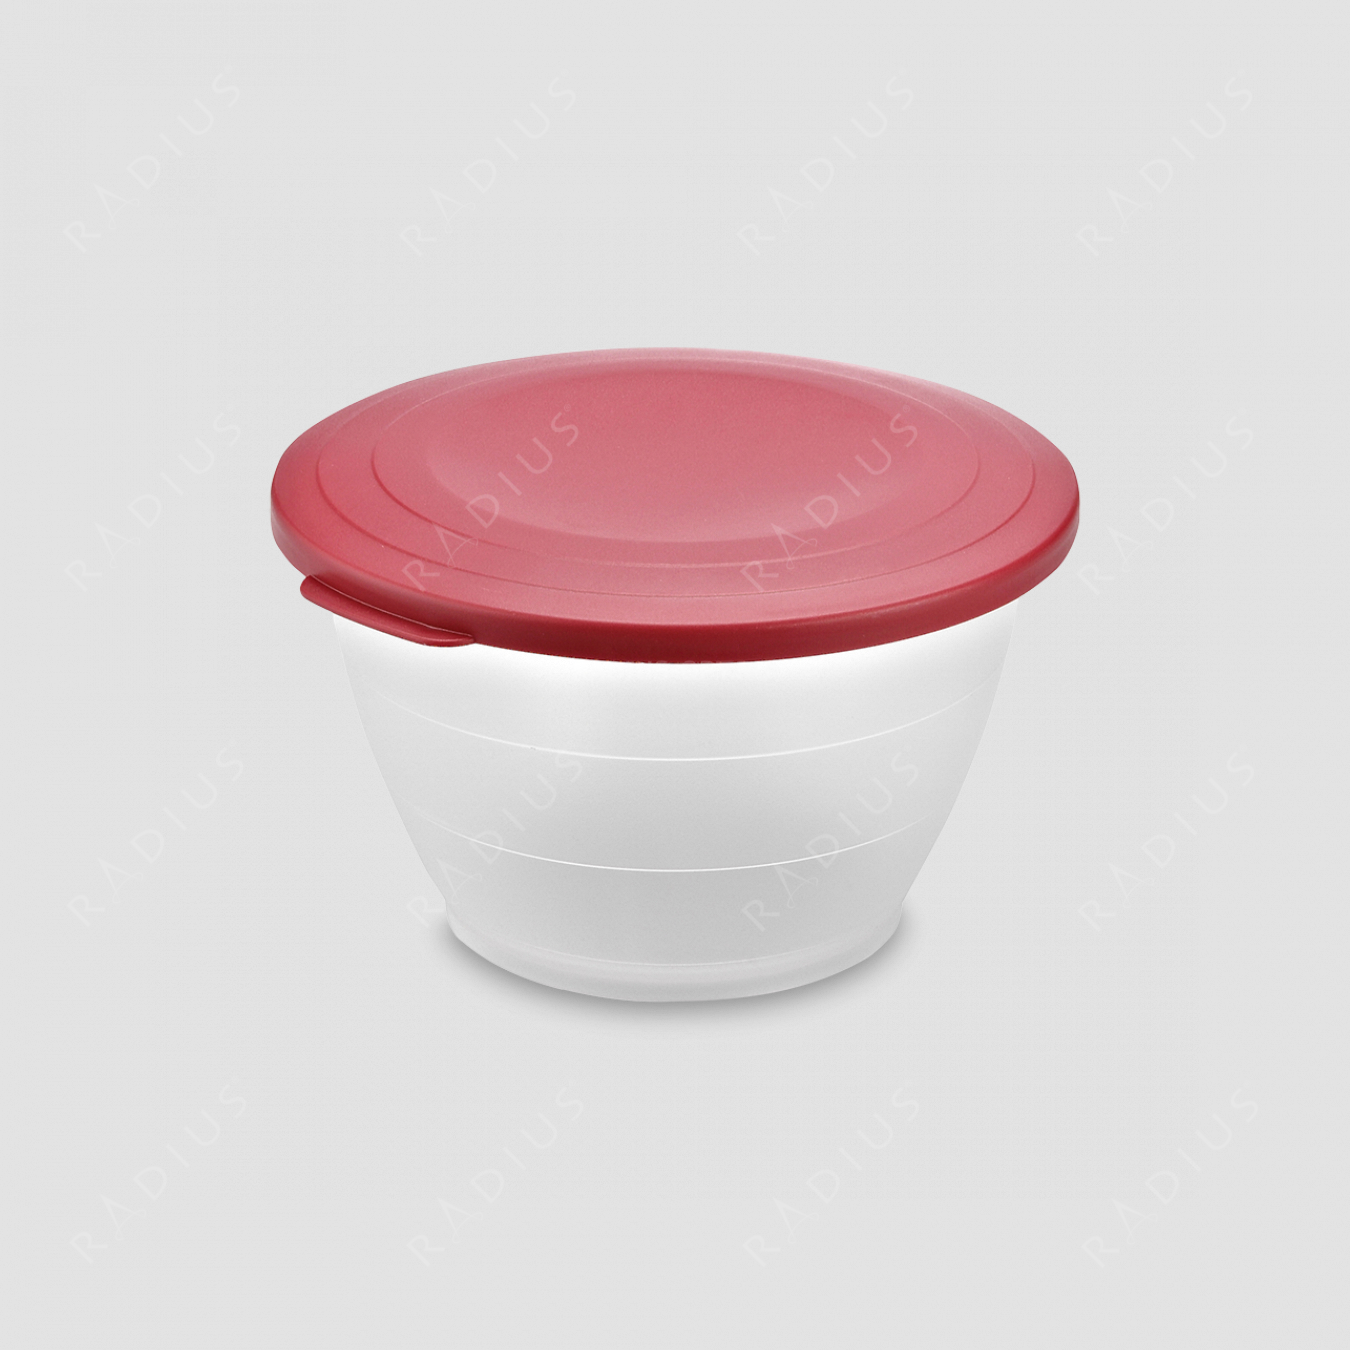 Емкость для салата с крышкой, объем 1,3 л, диаметр 18 см, цвет - красный, серия Plastic tools, Westmark, Германия